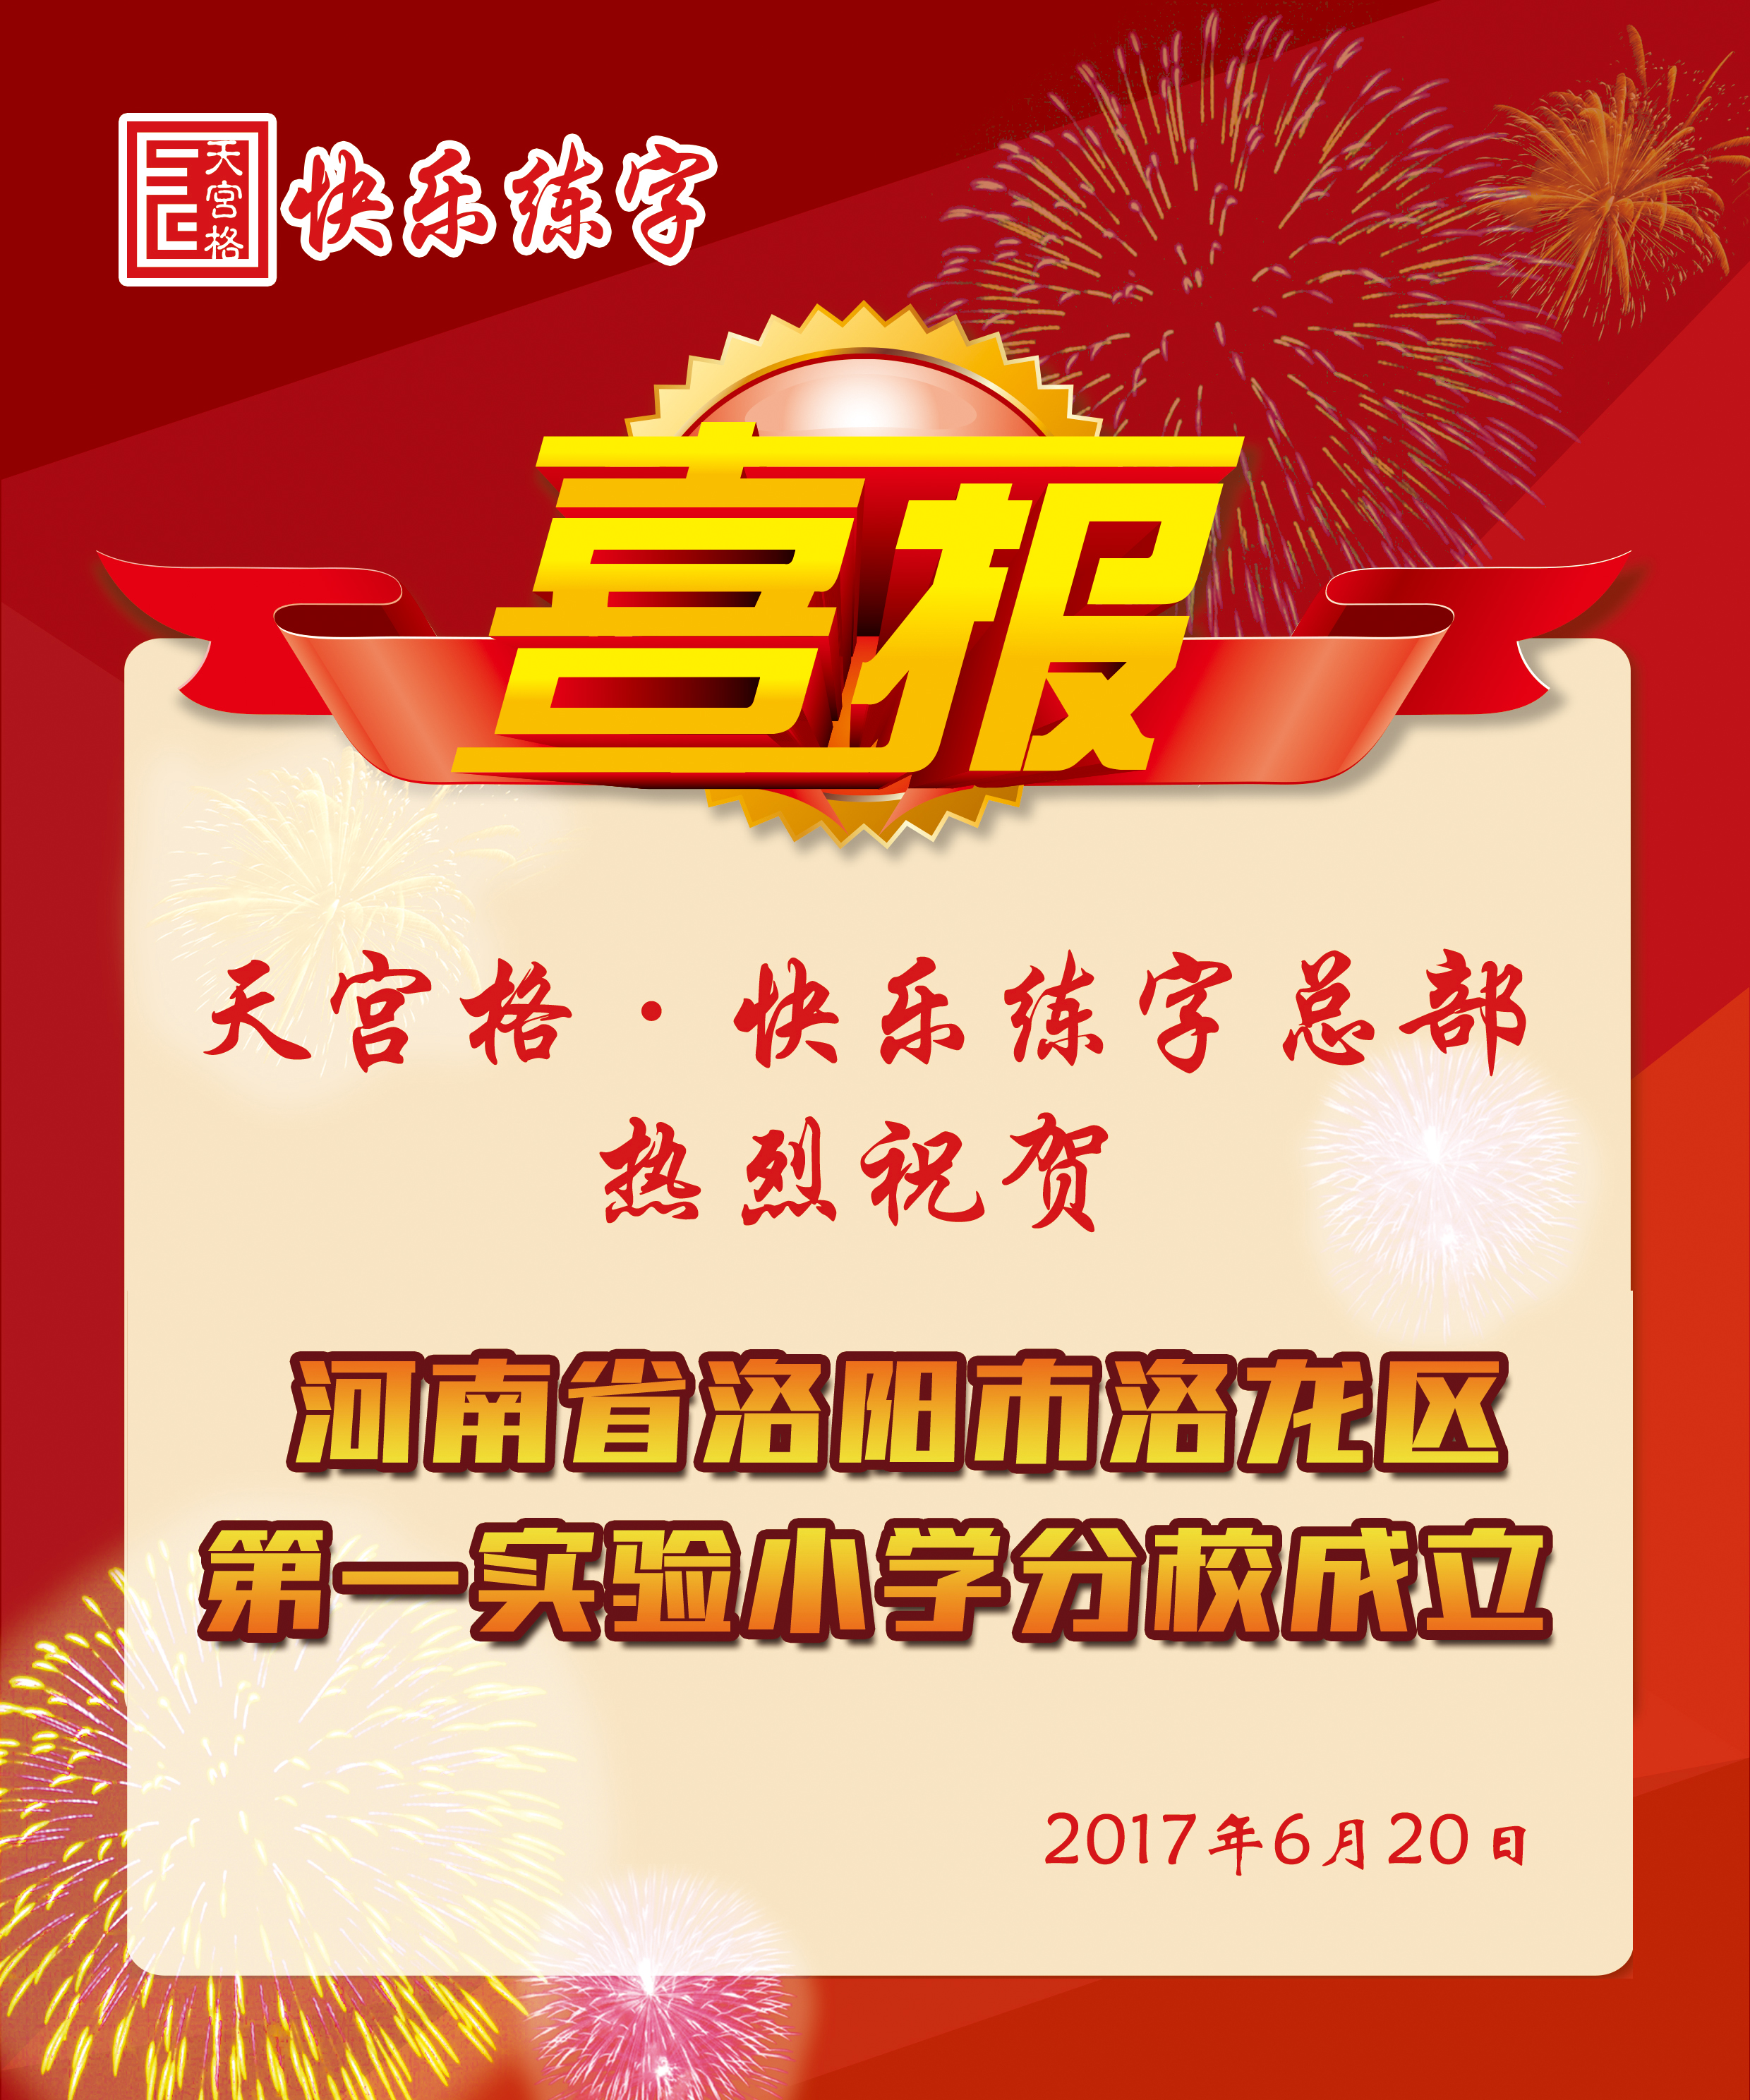 【热烈祝贺】河南省洛阳市洛龙区第一实验小学分校成立